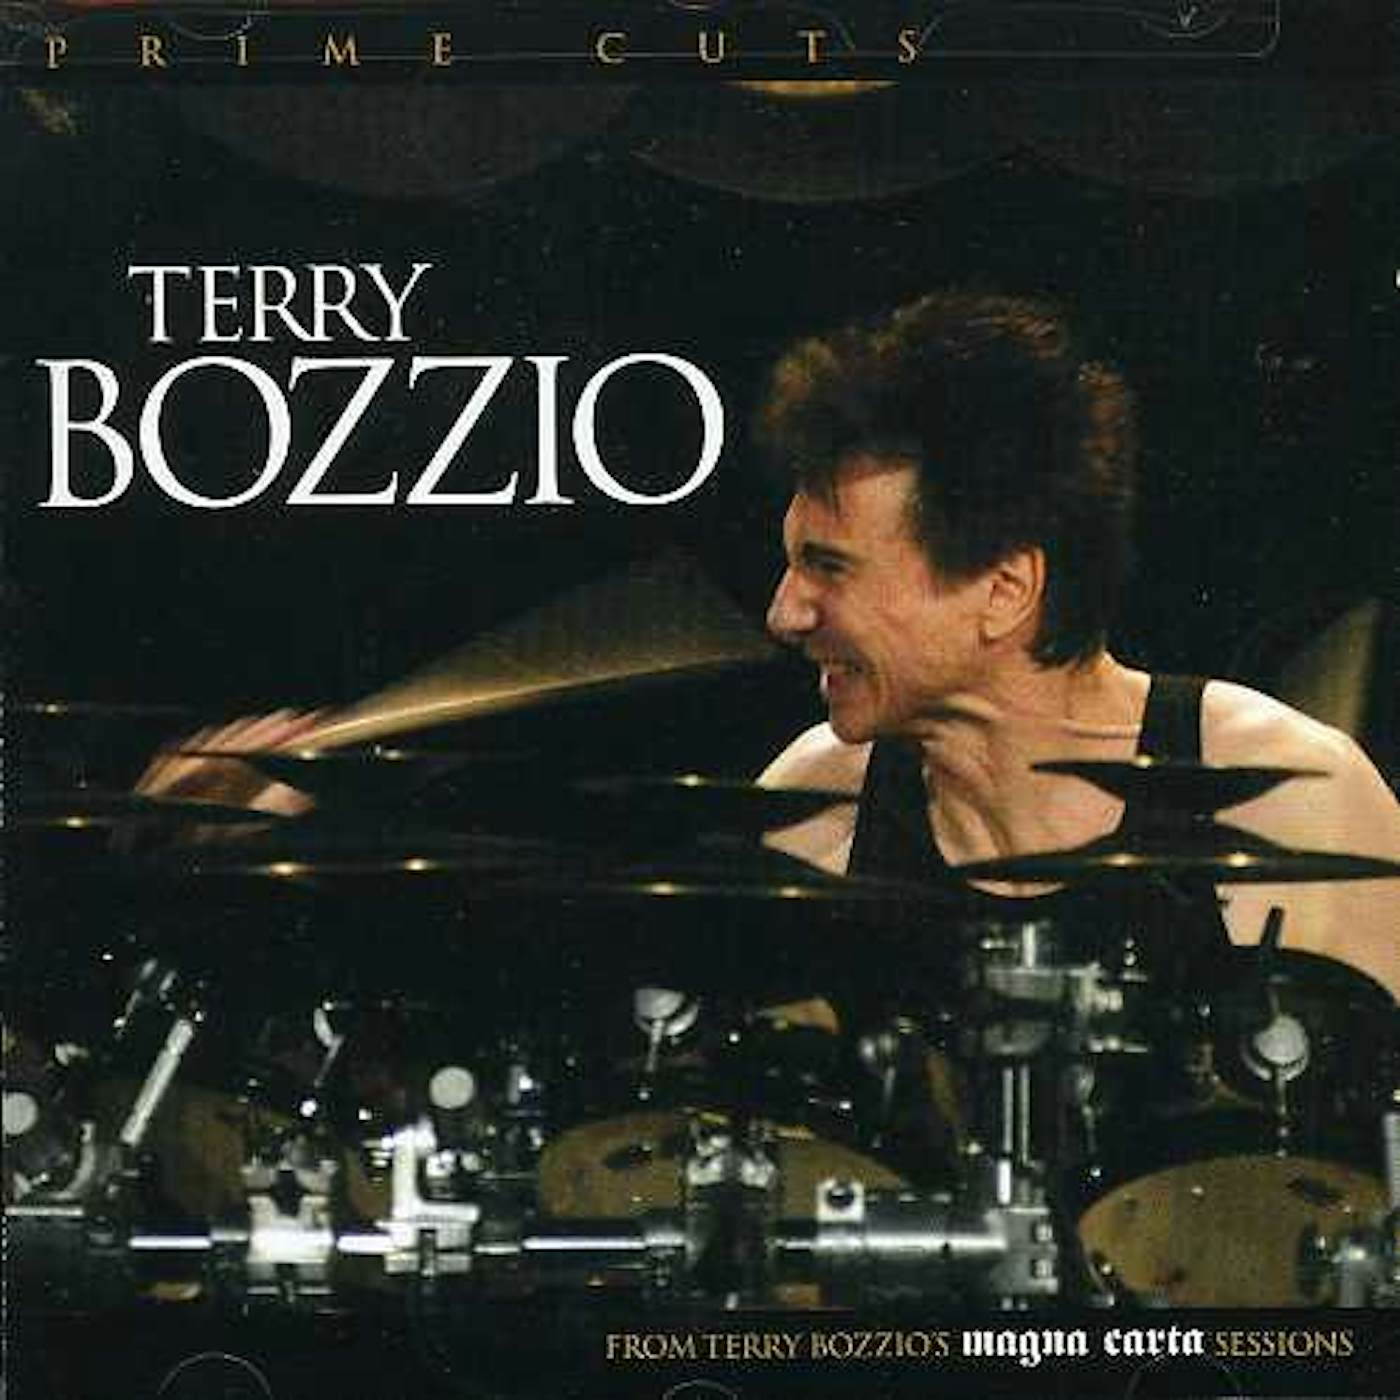 Terry Bozzio PRIME CUTS CD